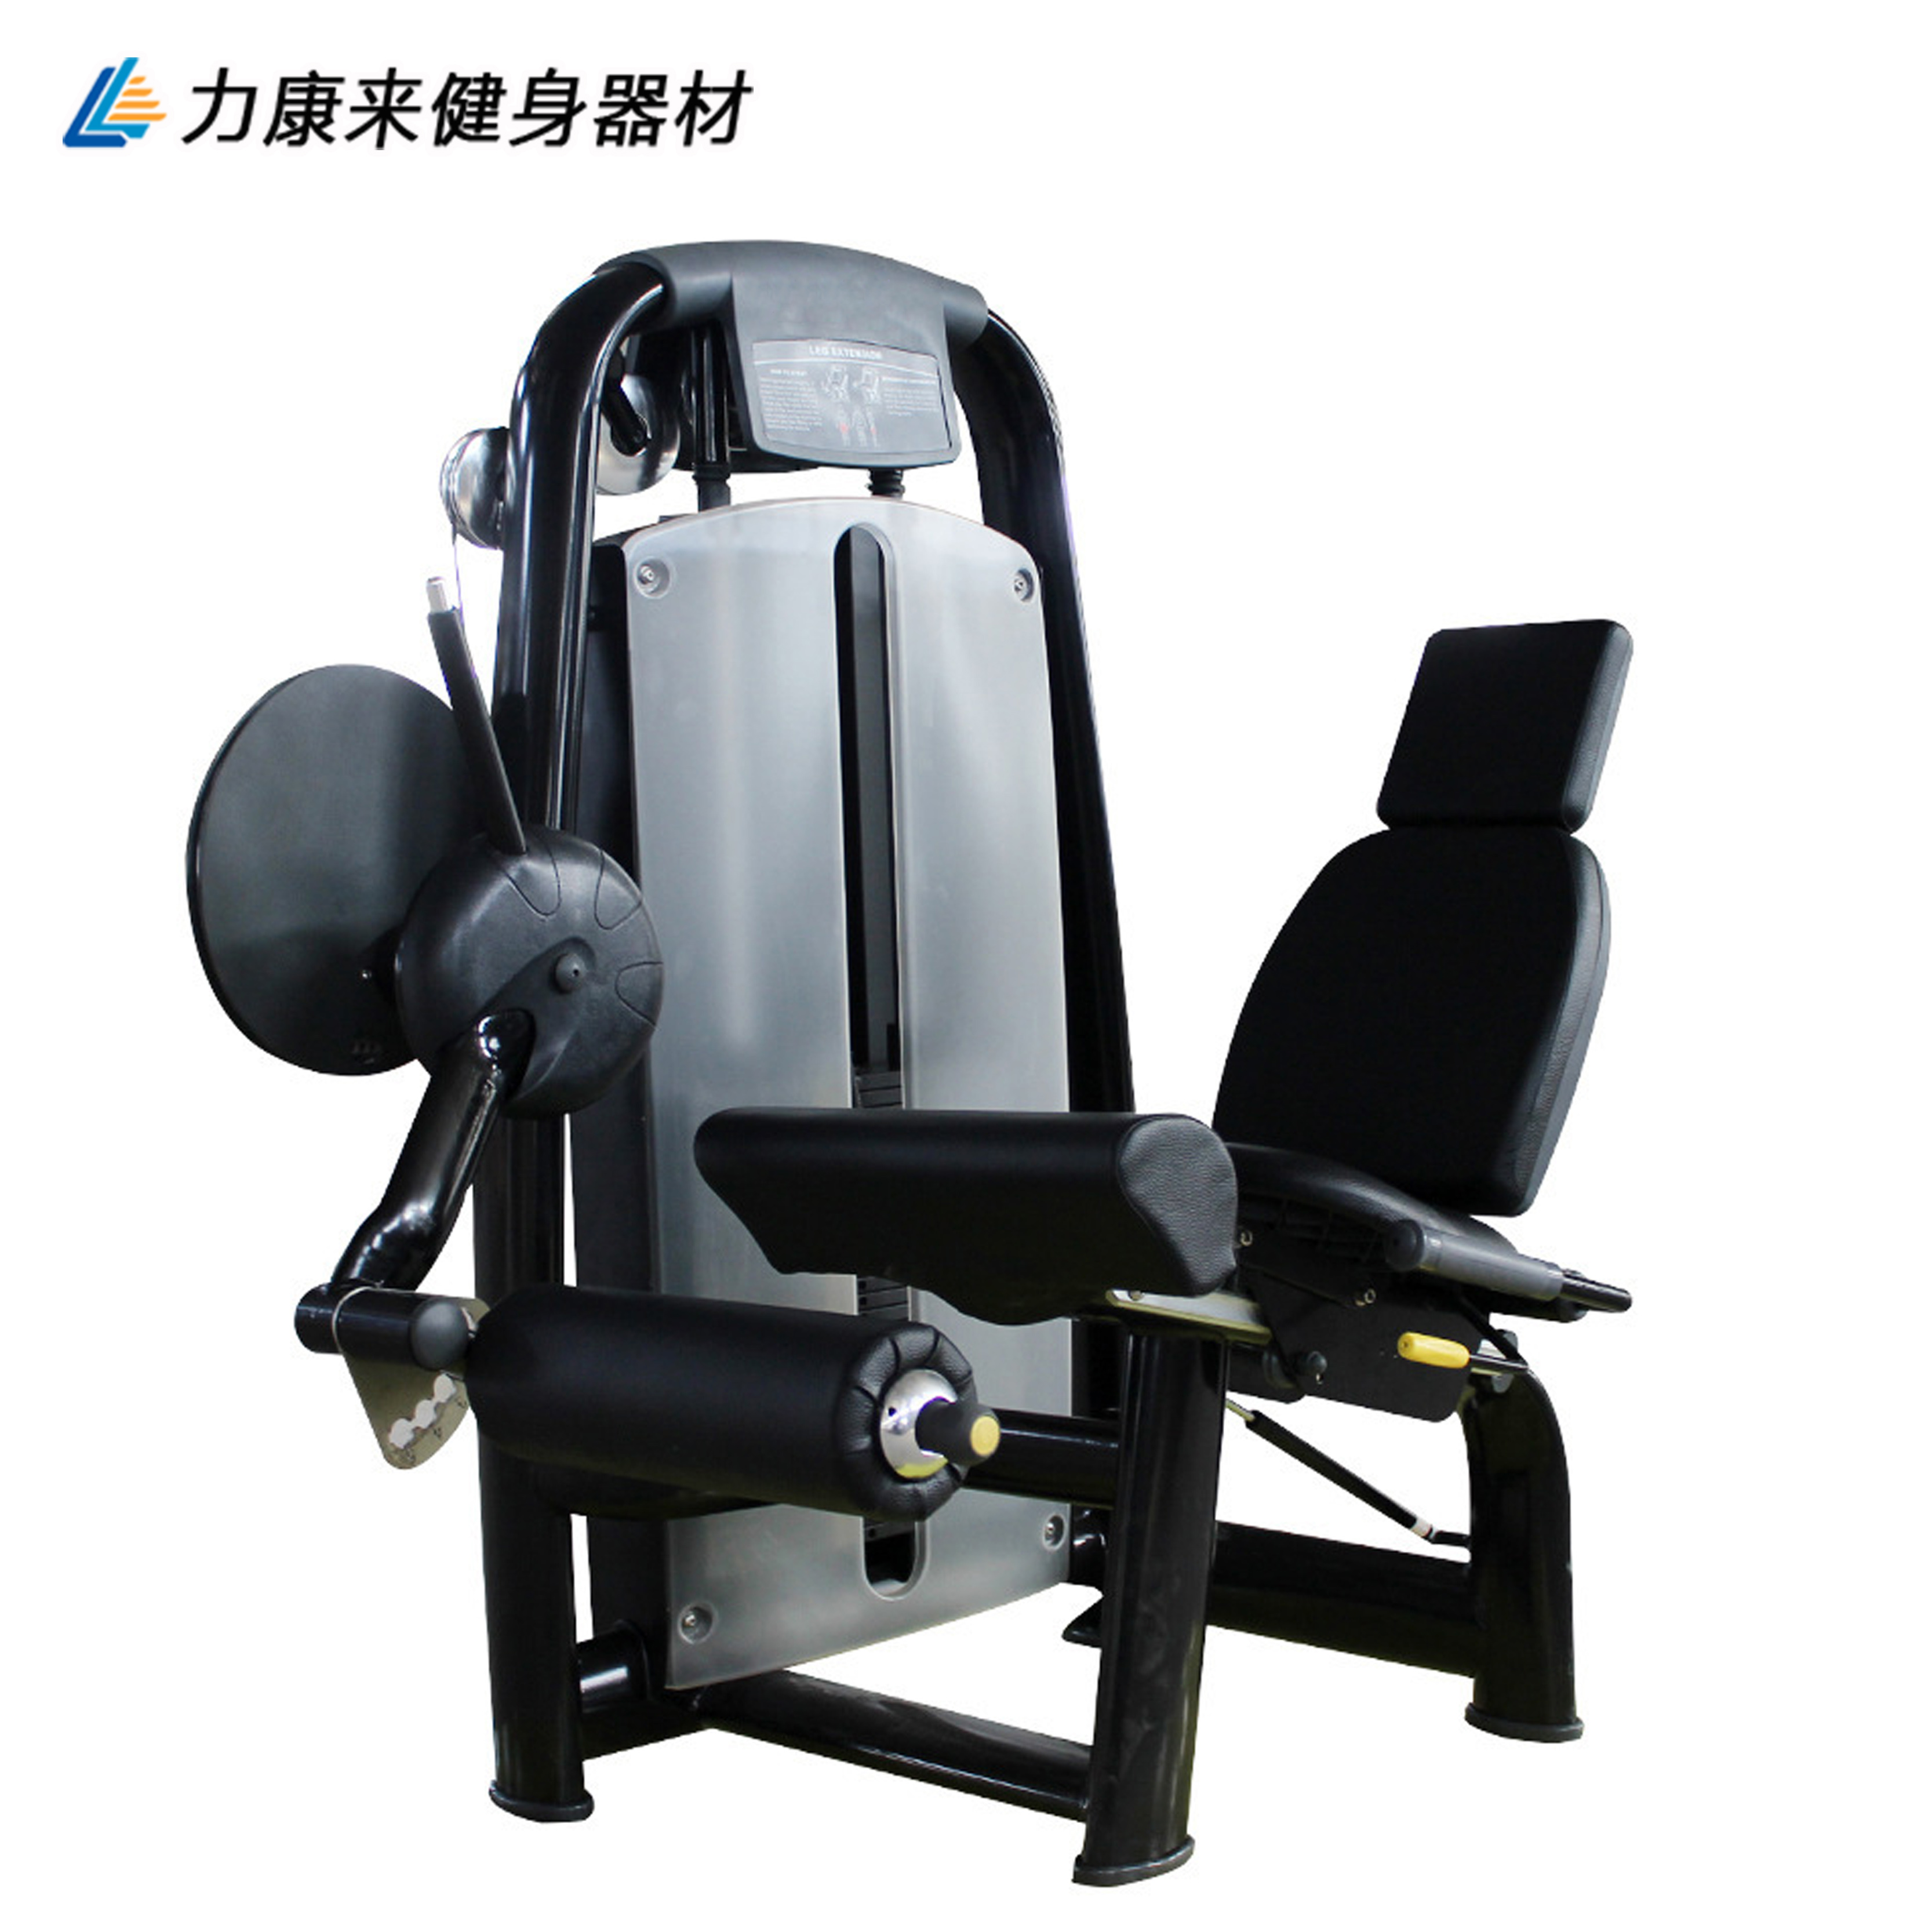 商用坐式伸腿训练器 腿部伸展肌肉力量训练器 室内健身器材